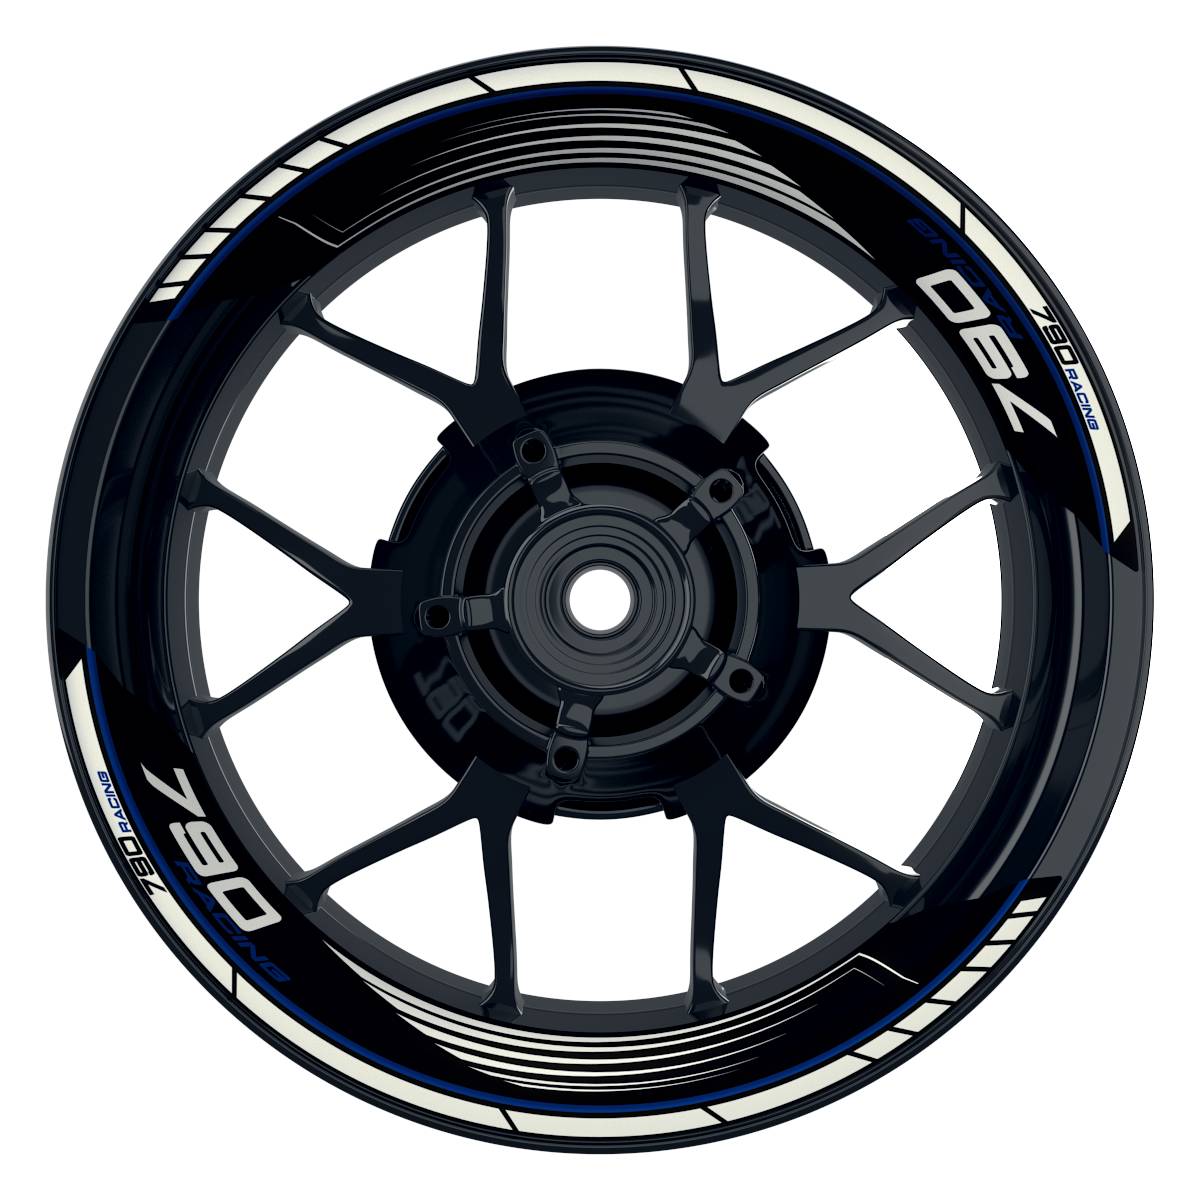 KTM Racing 790 SAW schwarz blau Frontansicht